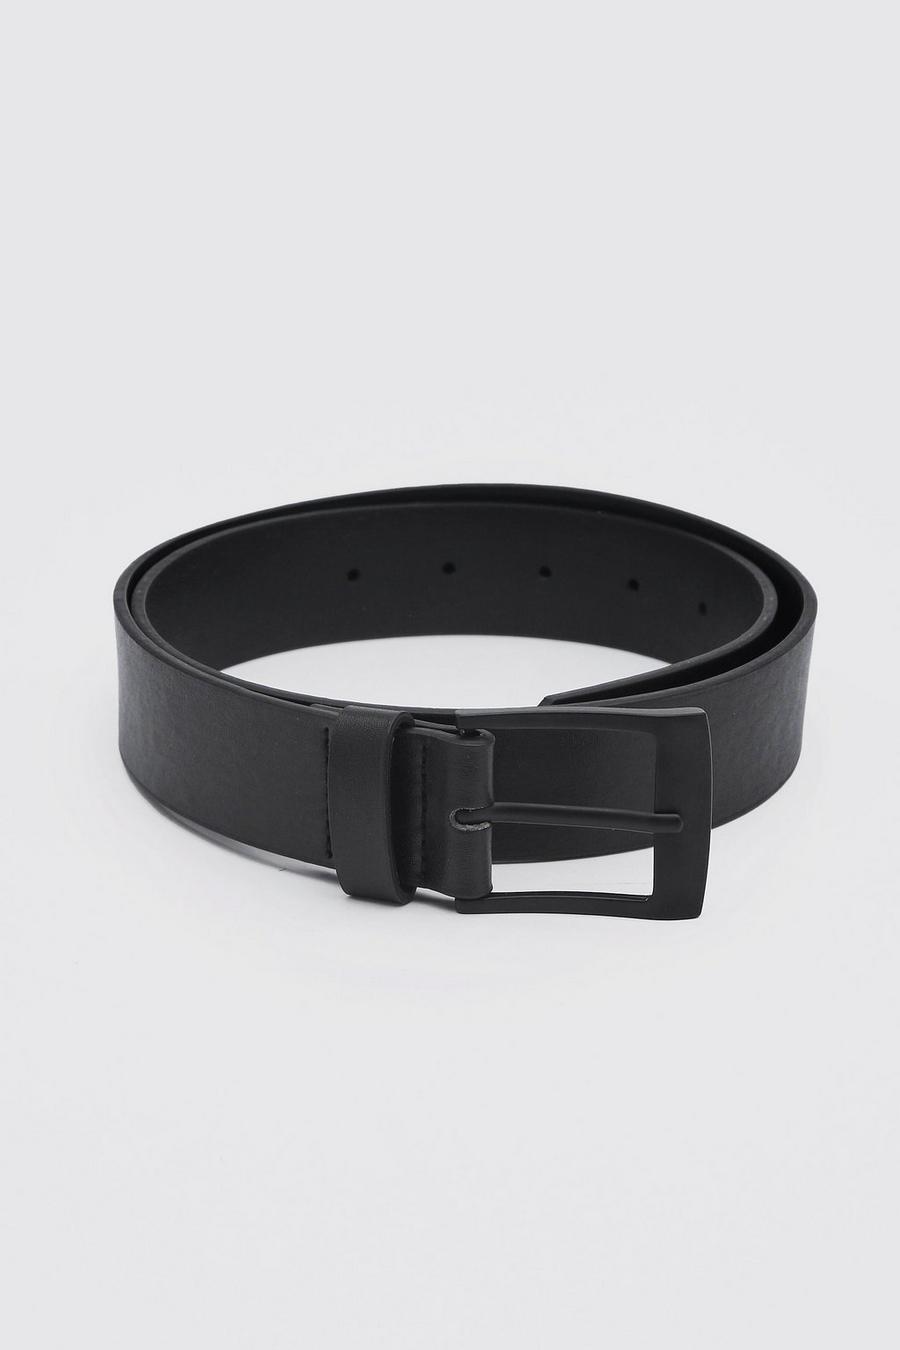 Cinturón efecto cuero mate negro con hebilla rectangular image number 1